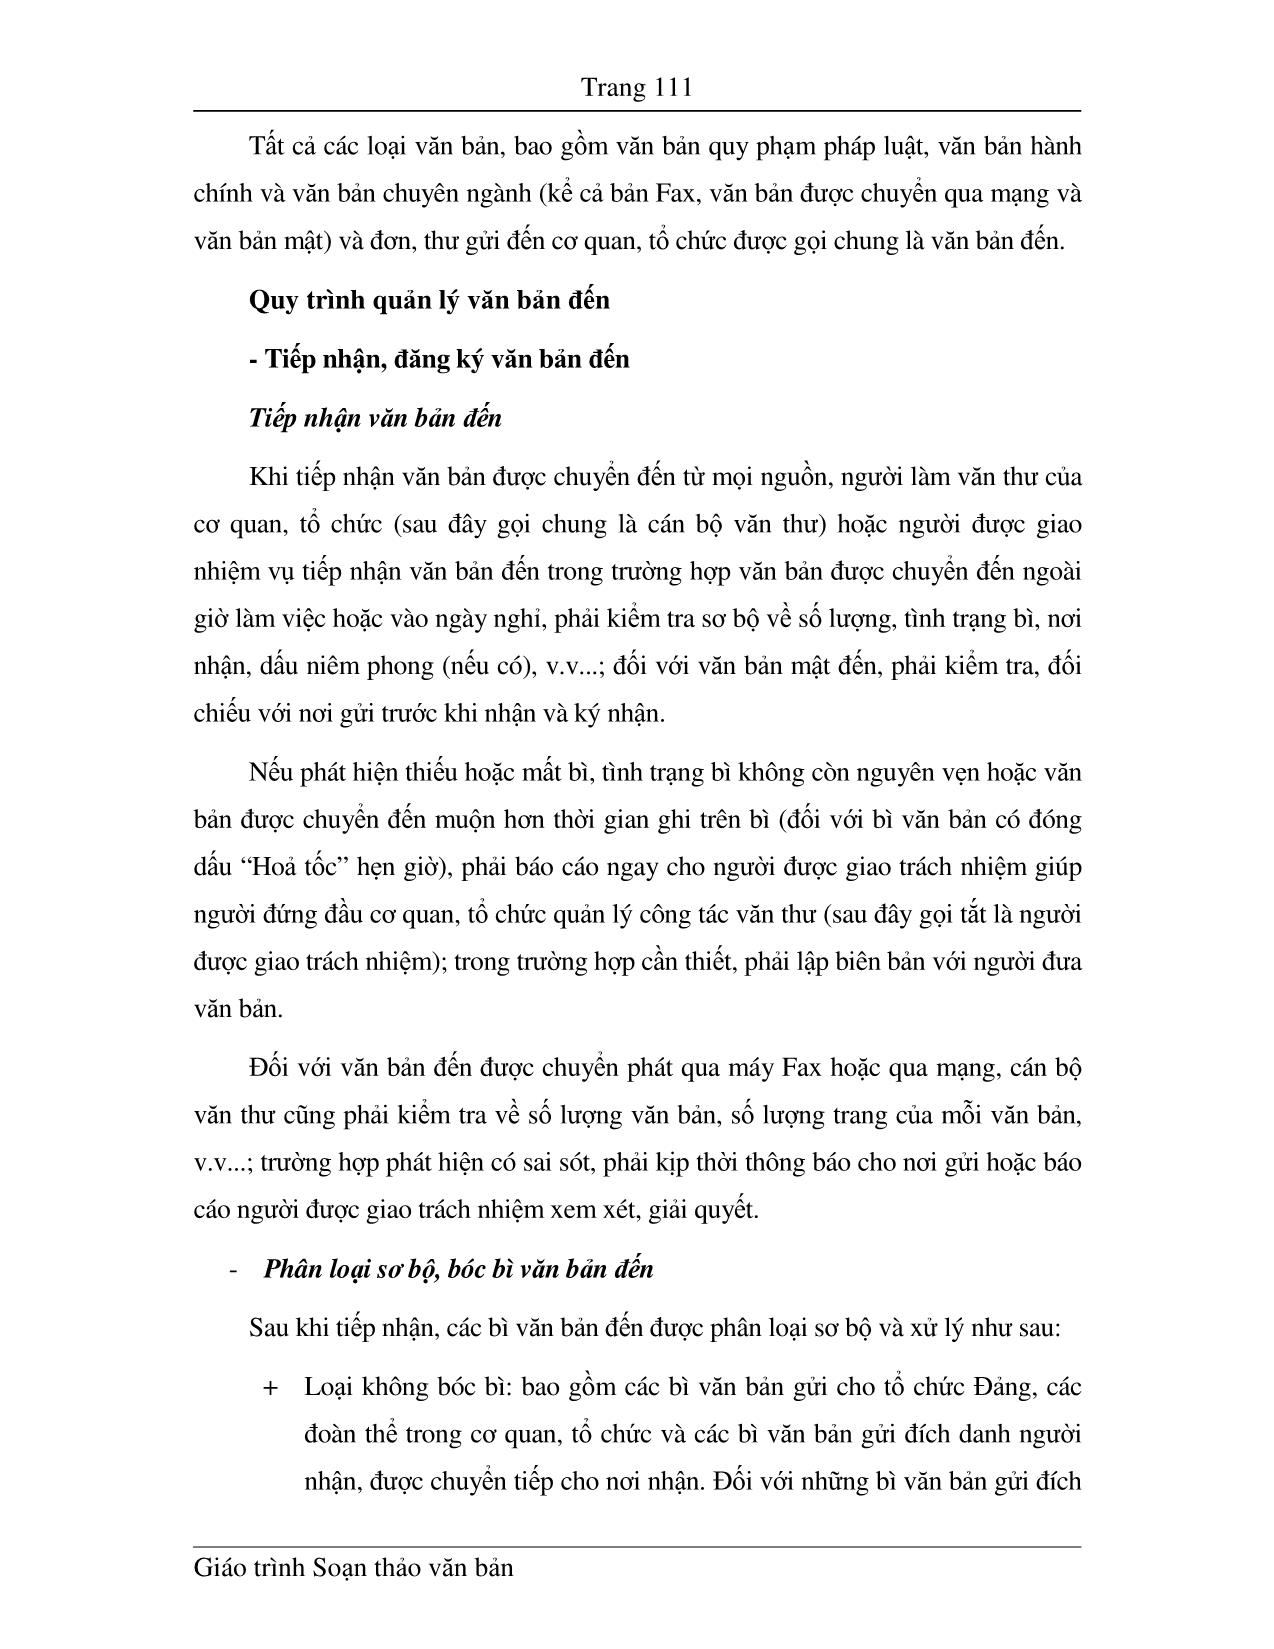 Giáo trình Soạn thảo văn bản (Phần 2) trang 4